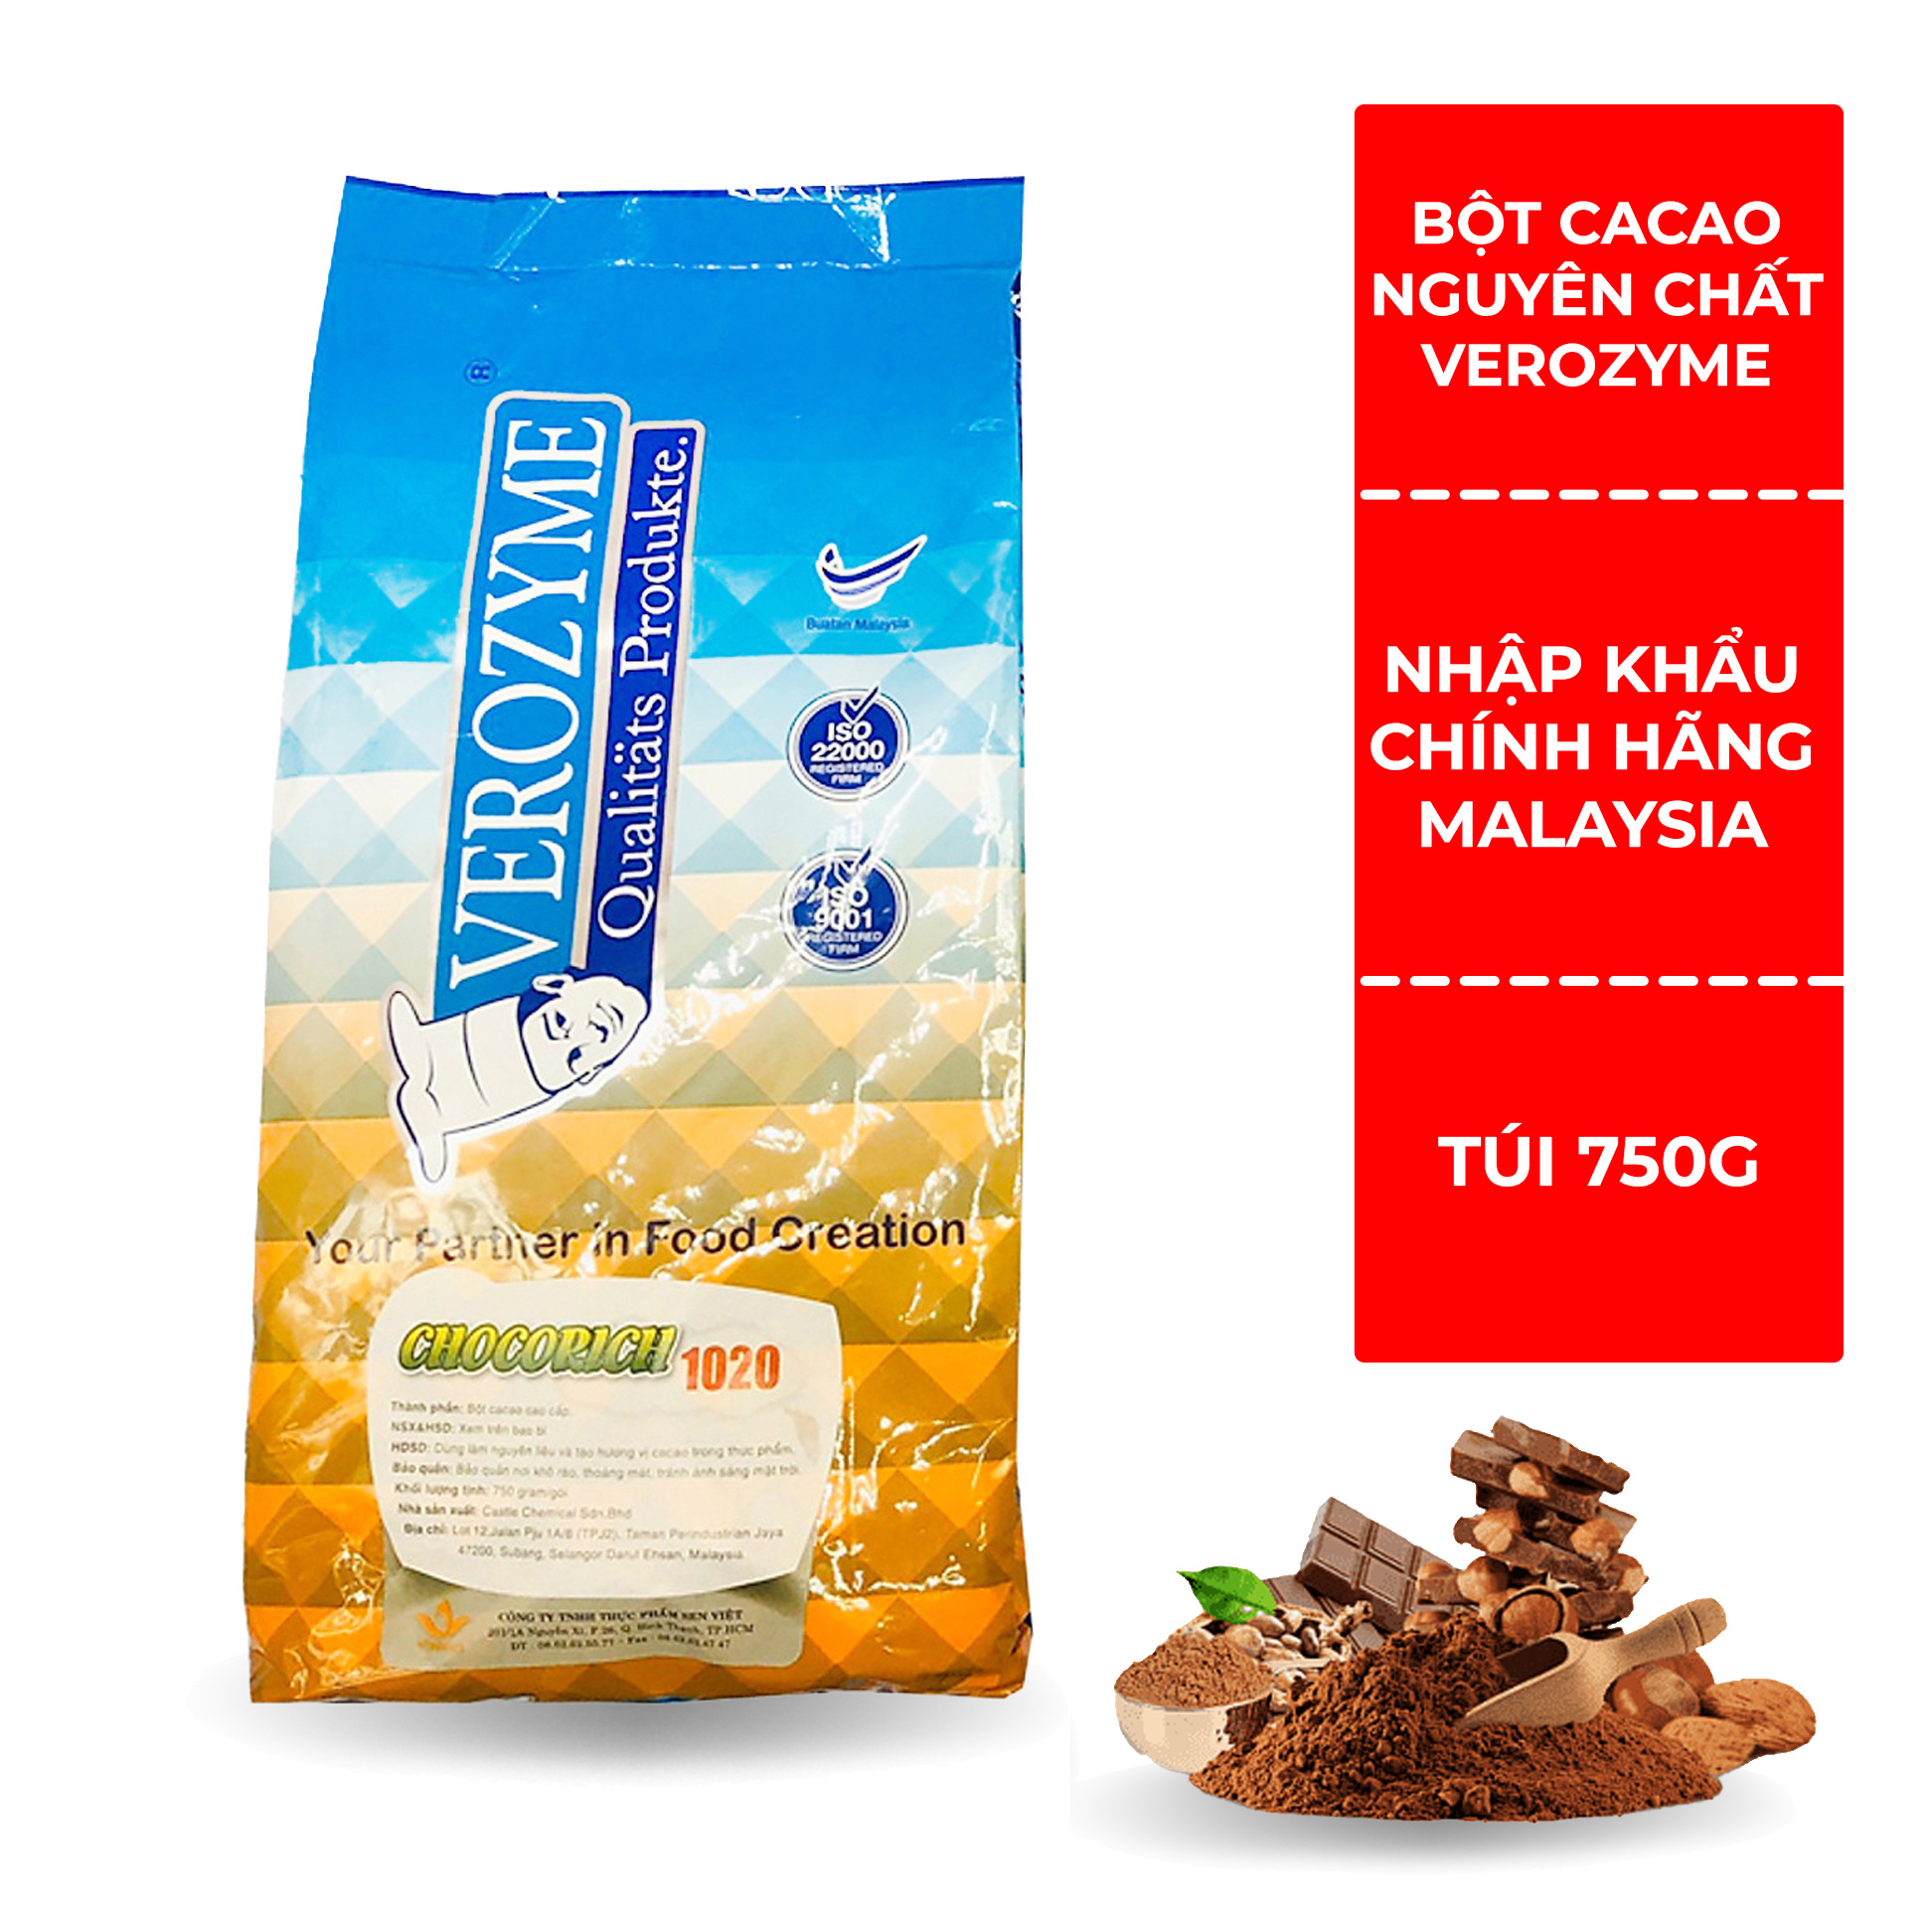 [Verozyme] Bột Cacao Nguyên Chất Malaysia - Chocorich 1020 Verozyme - 750gram - Đậm vị thơm ngon hấp dẫn - Hàng nhập khẩu chính hãng, an toàn